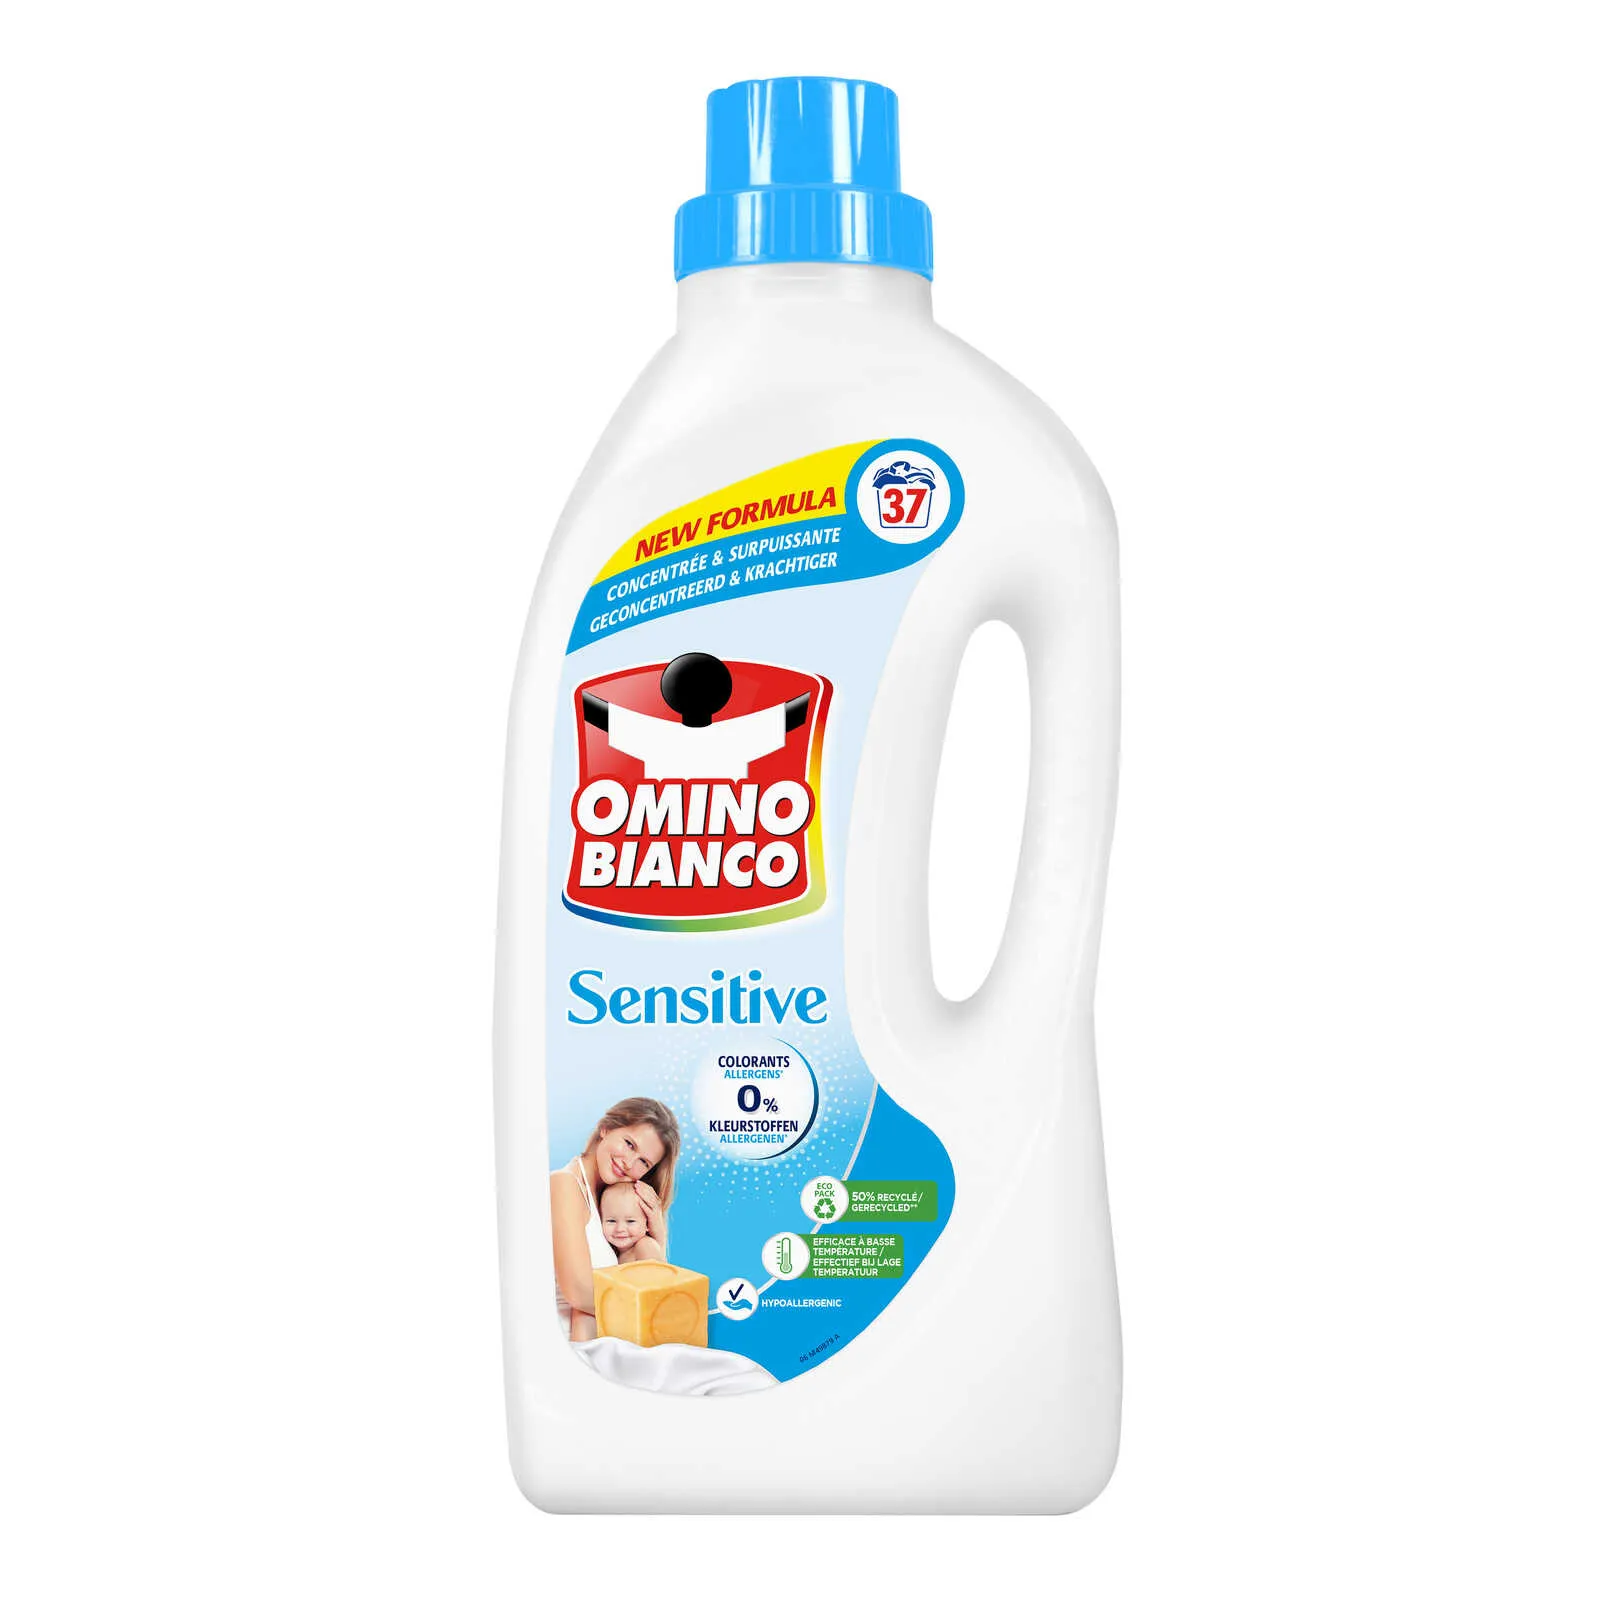 Omino Bianco Vloeibaar Wasmiddel Sensitive - 37 wasbeurten